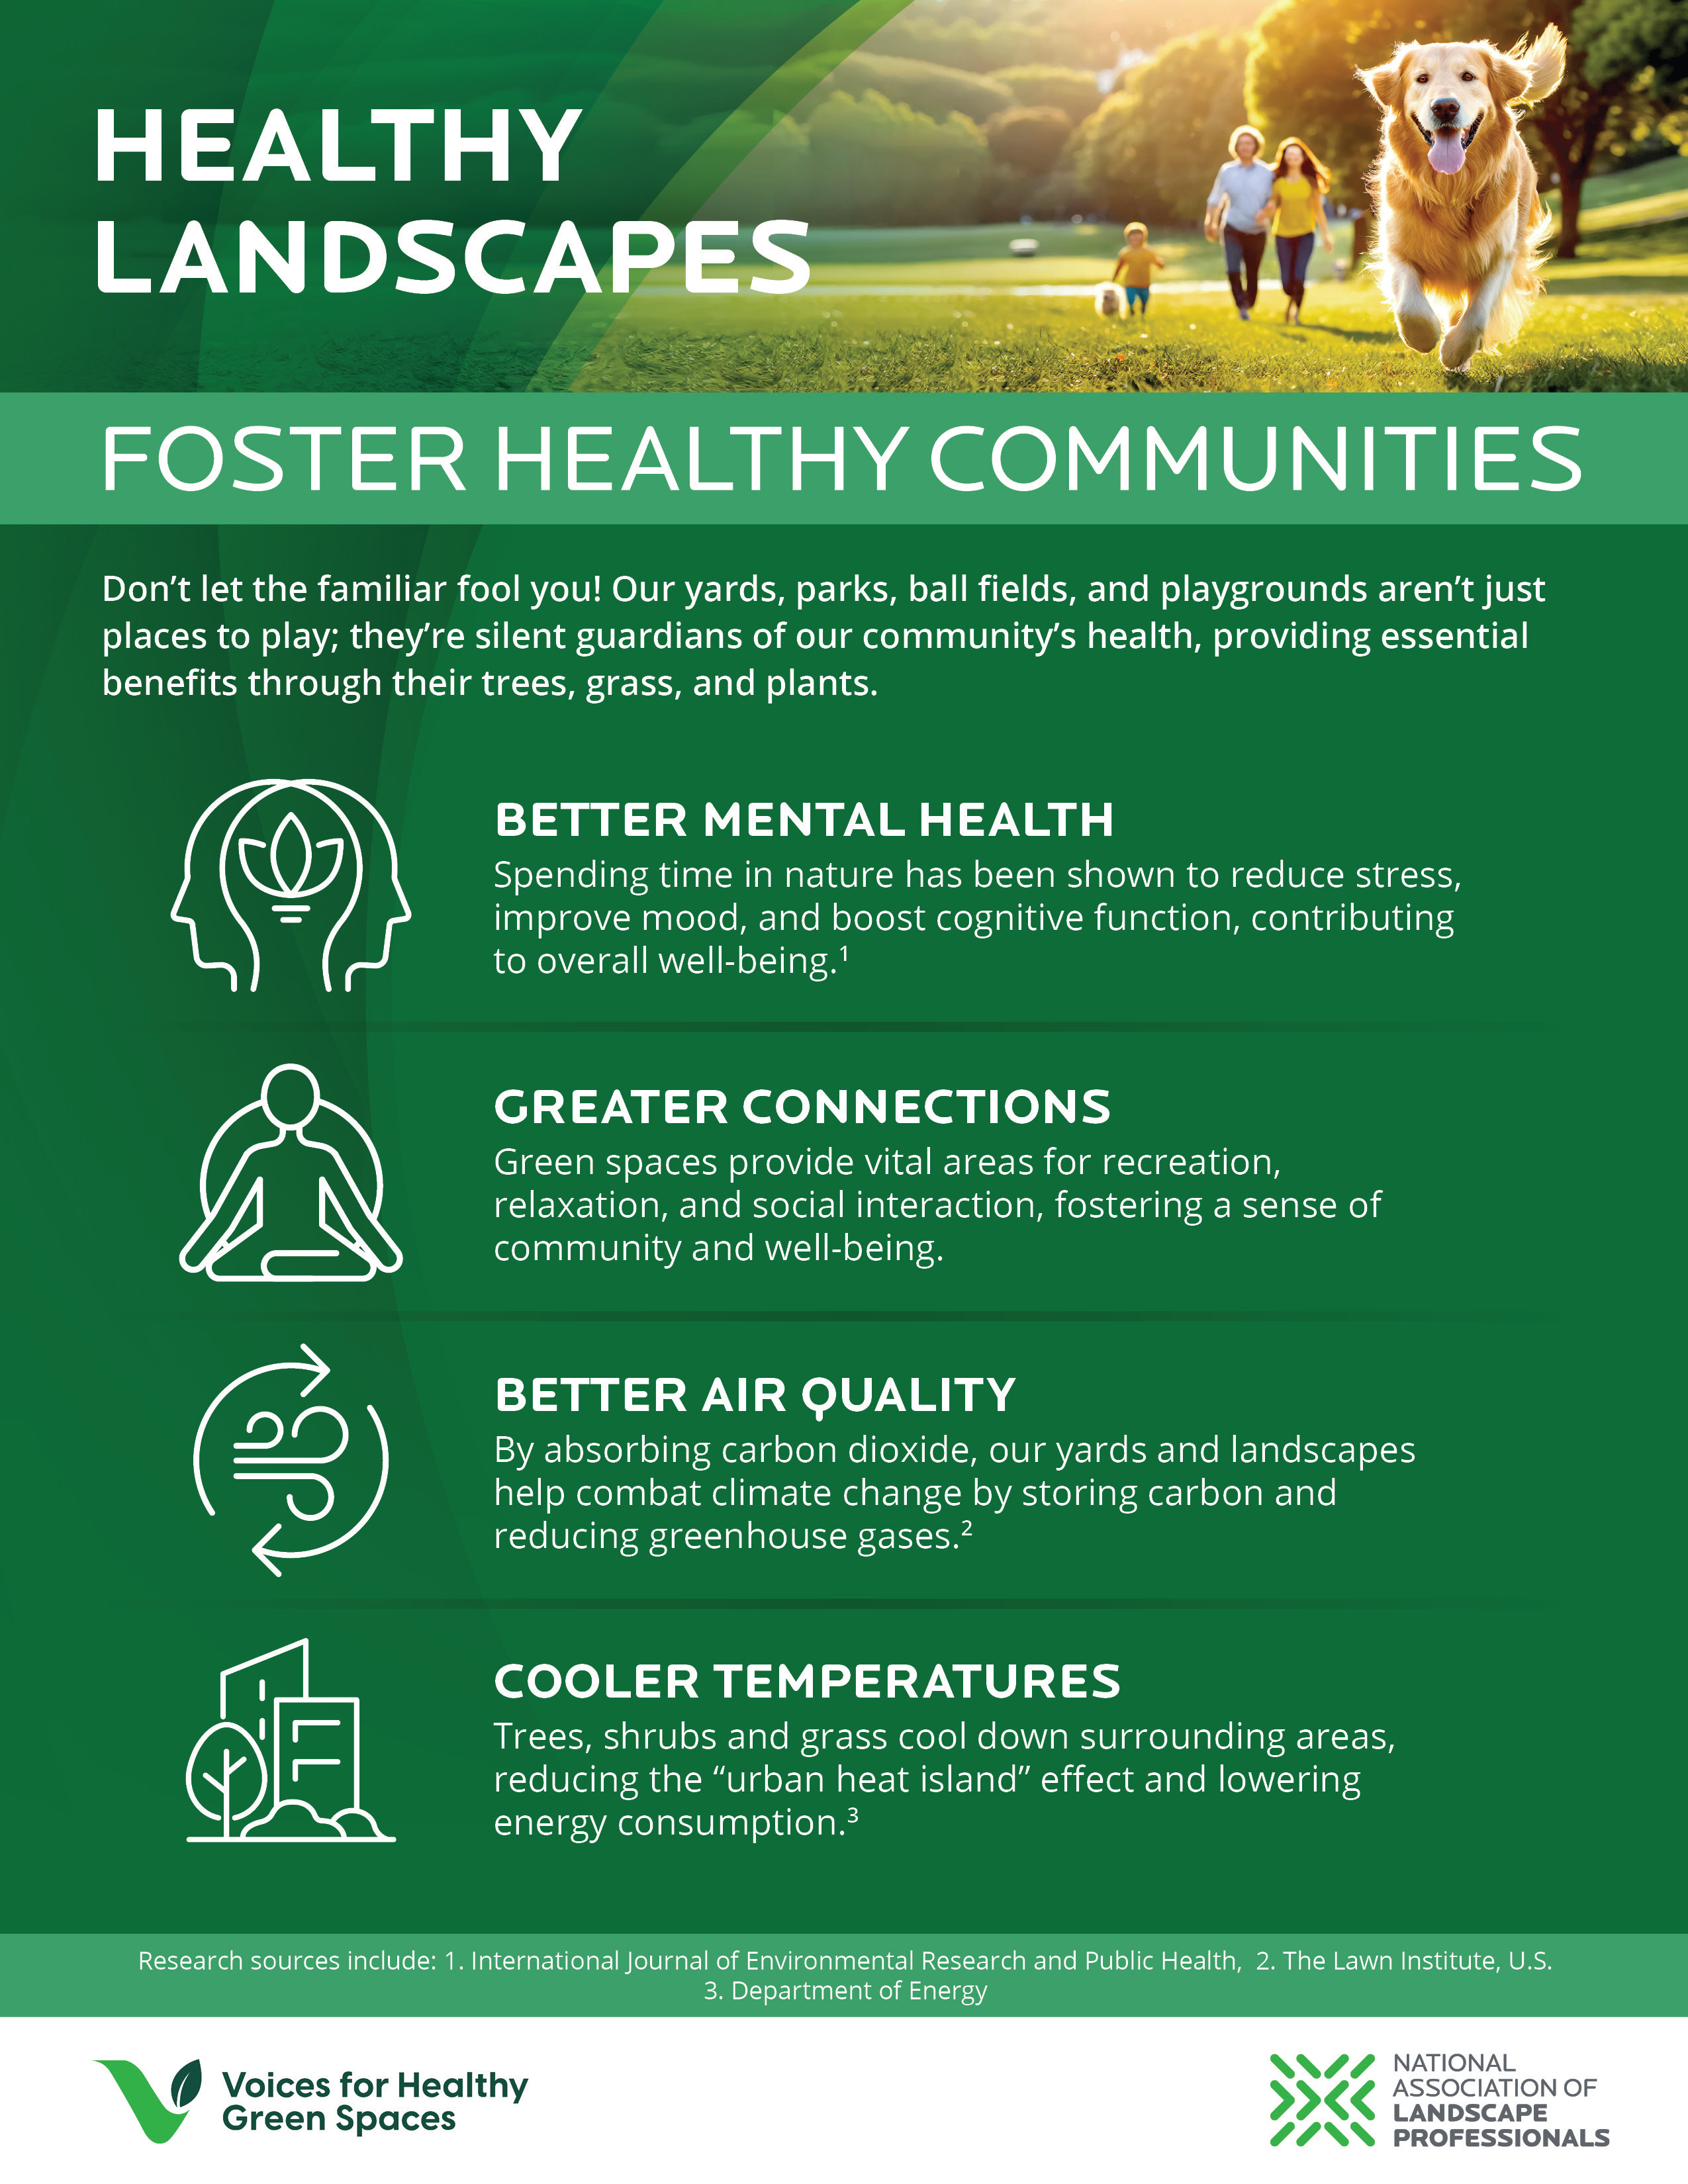 Foster Healthy Communities